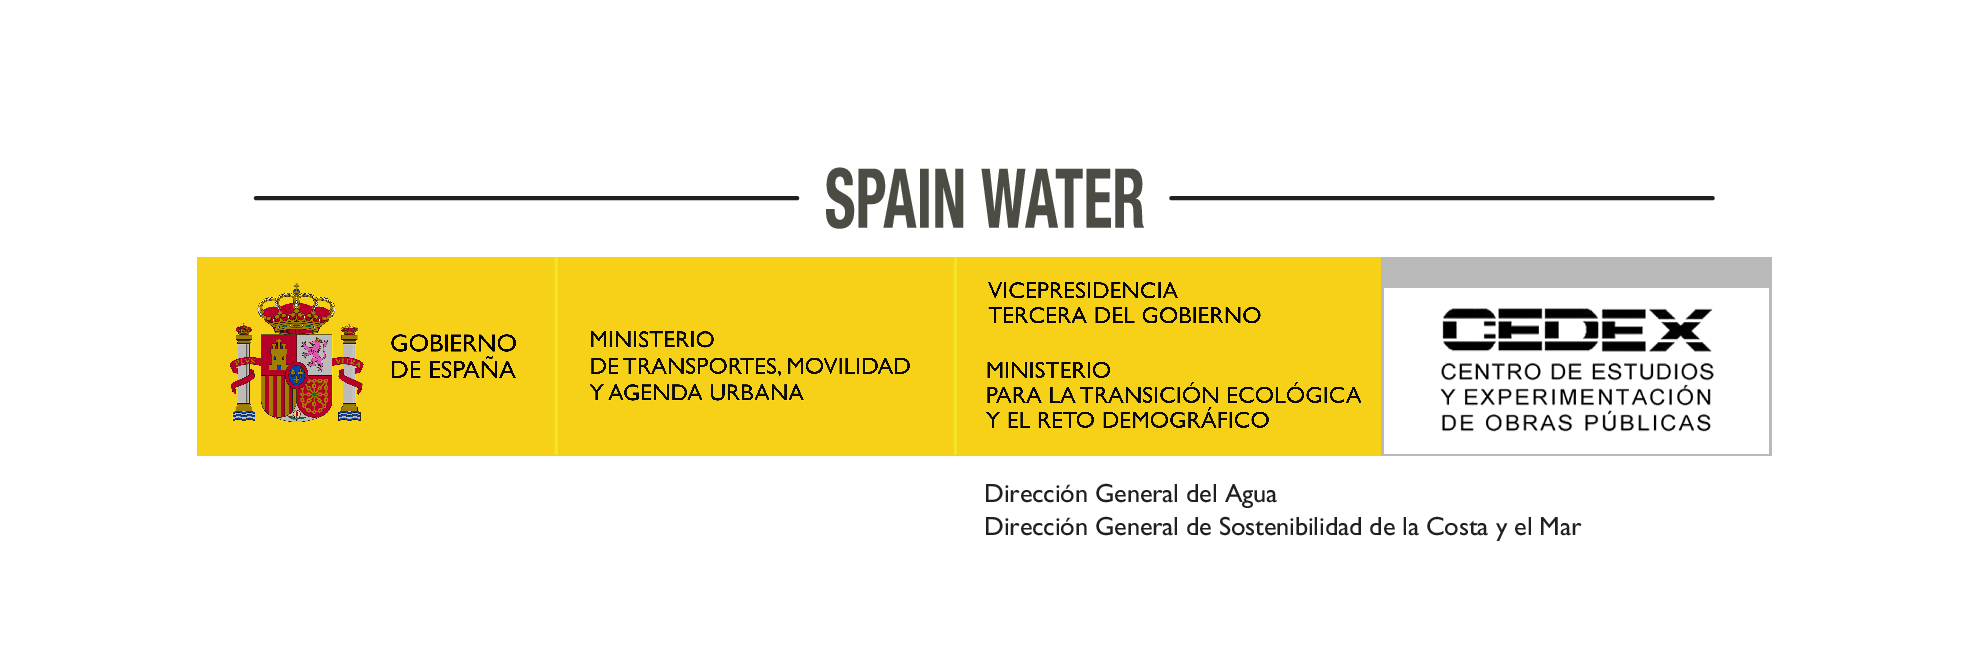 Logo-Spain_Water.jpg